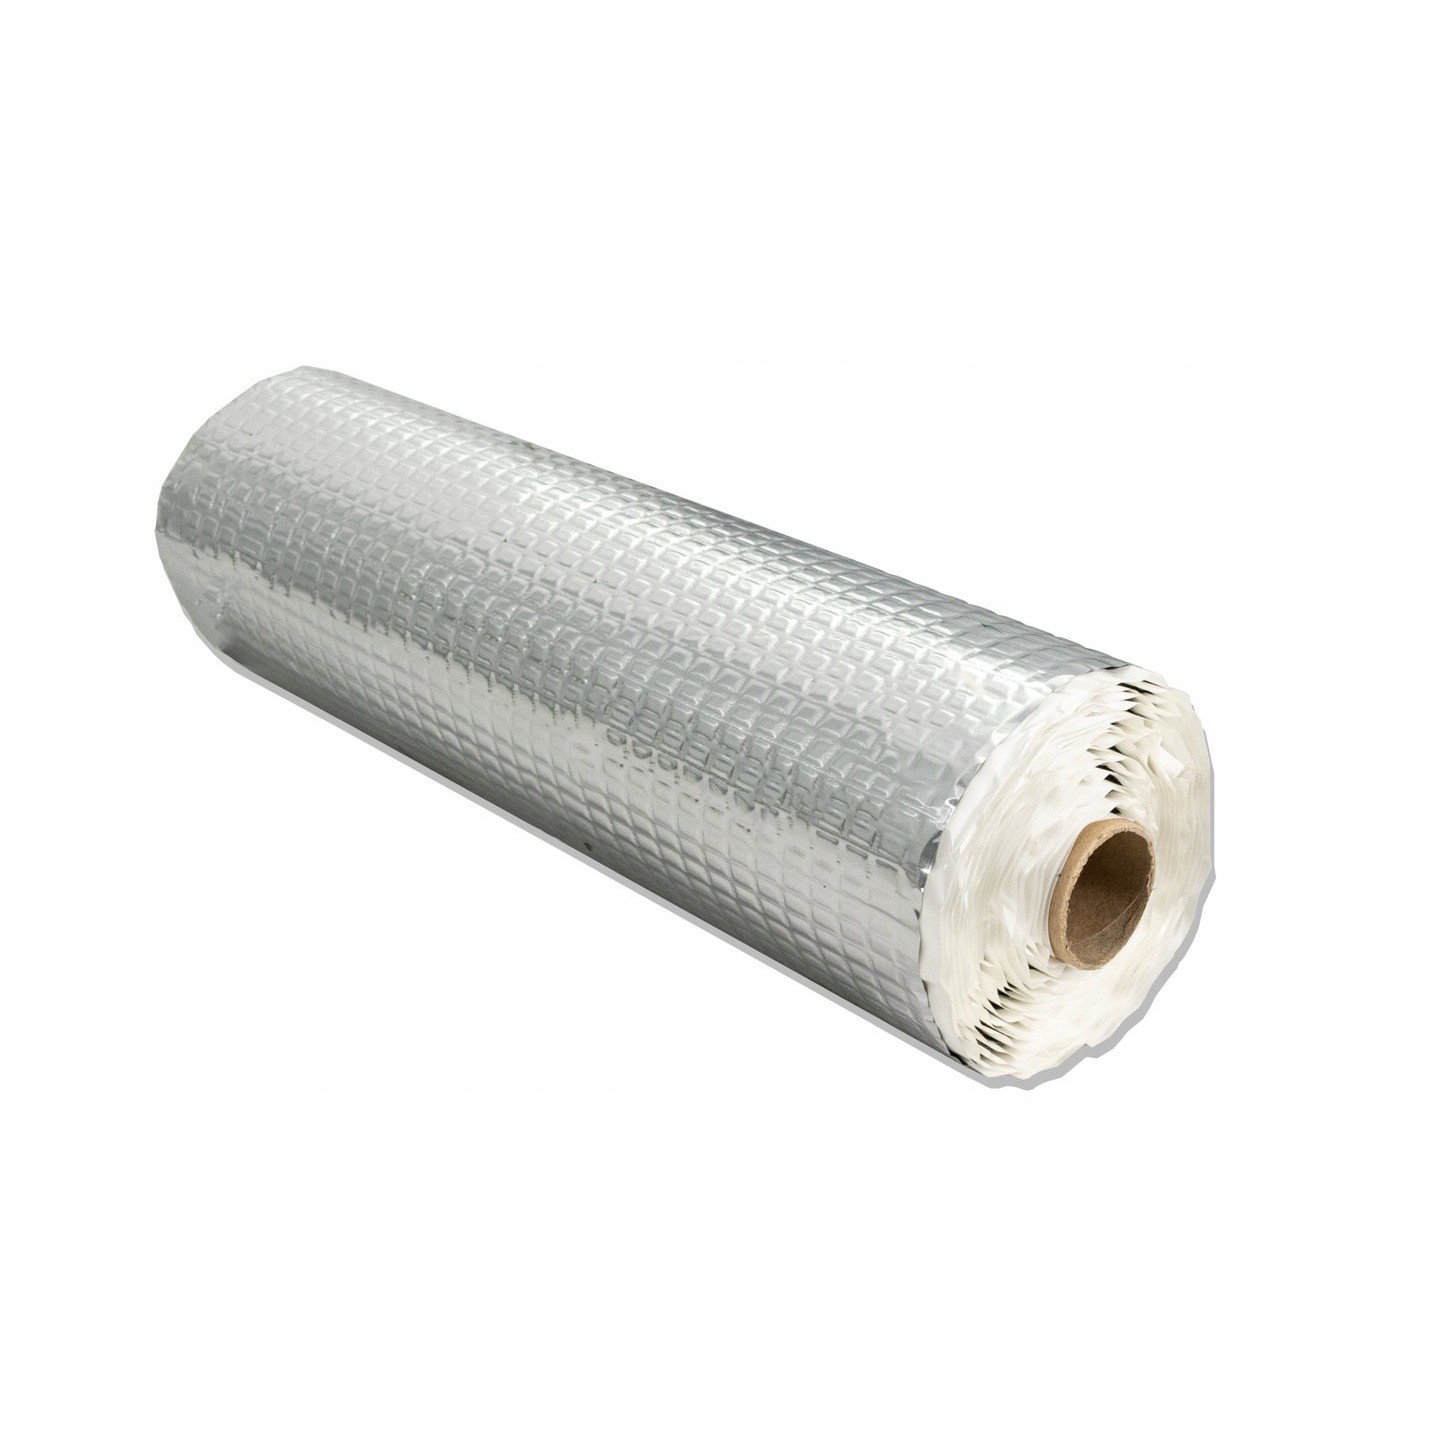 Öntapadó butil szőnyeg 2,5 mm ECO-25 alumíniumból 400x50cm omegamix.hu